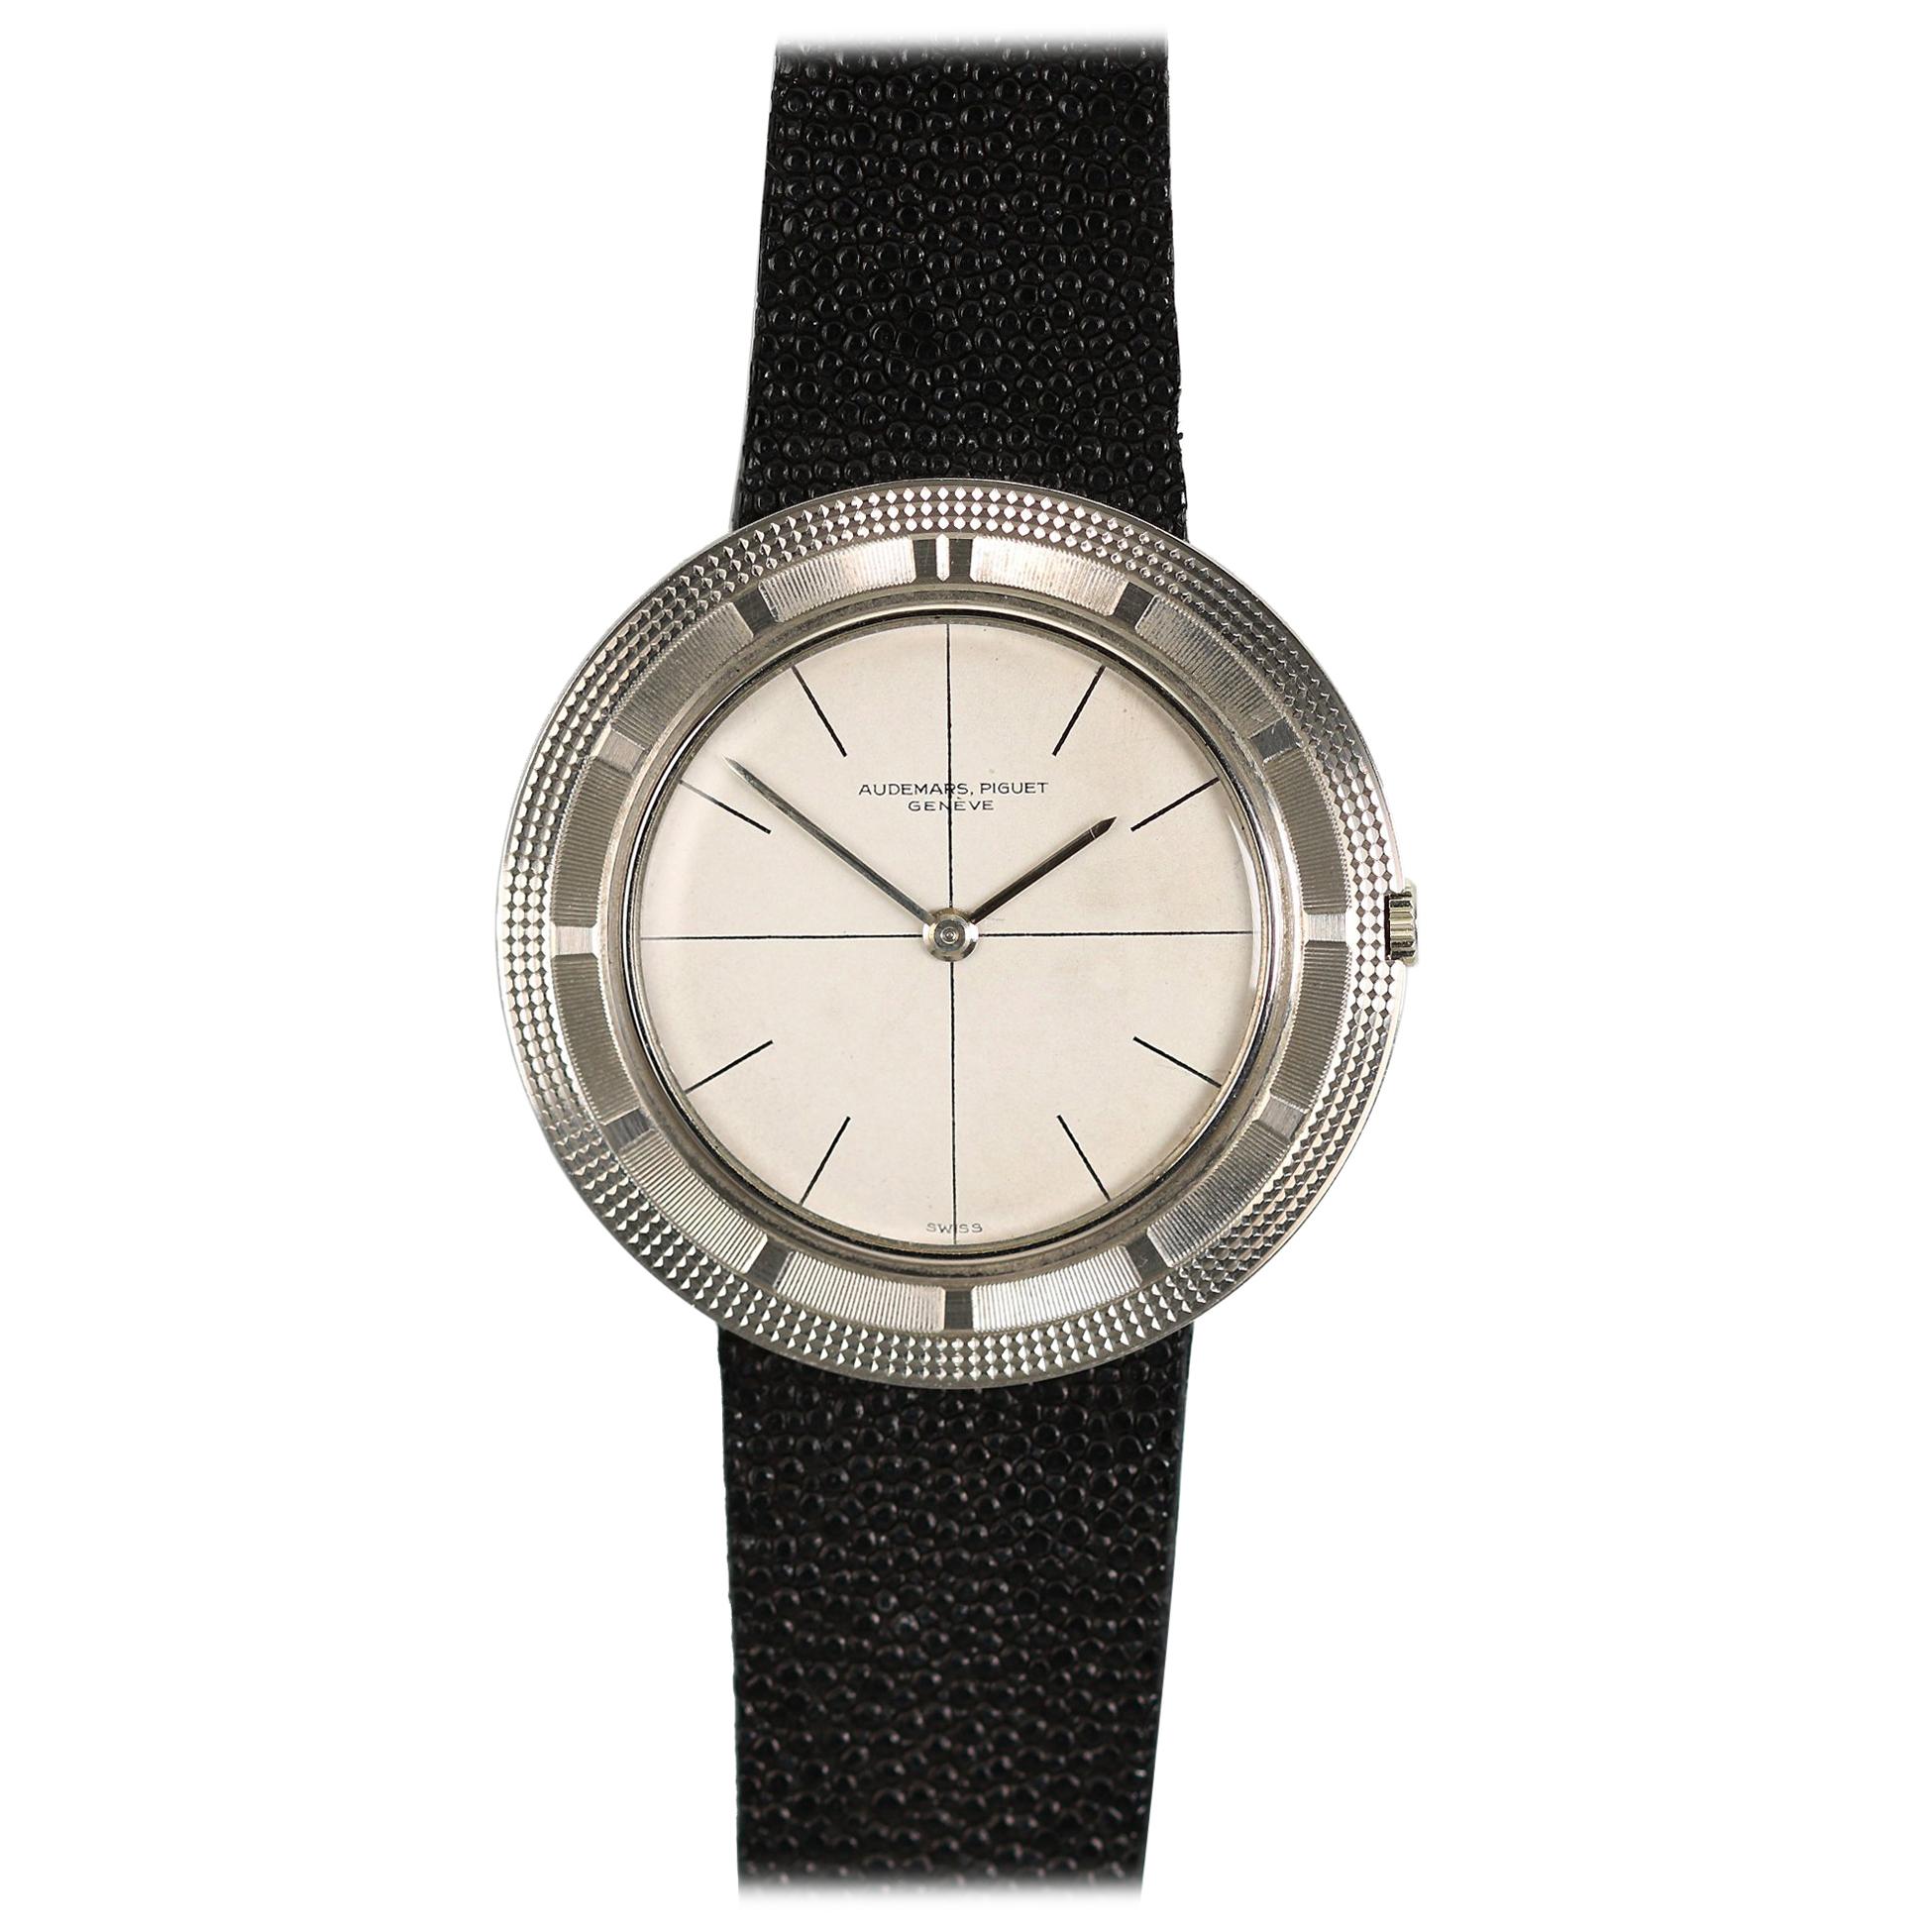 Audemars Piguet White Gold Ultra-Thin Wristwatch, circa 1950s